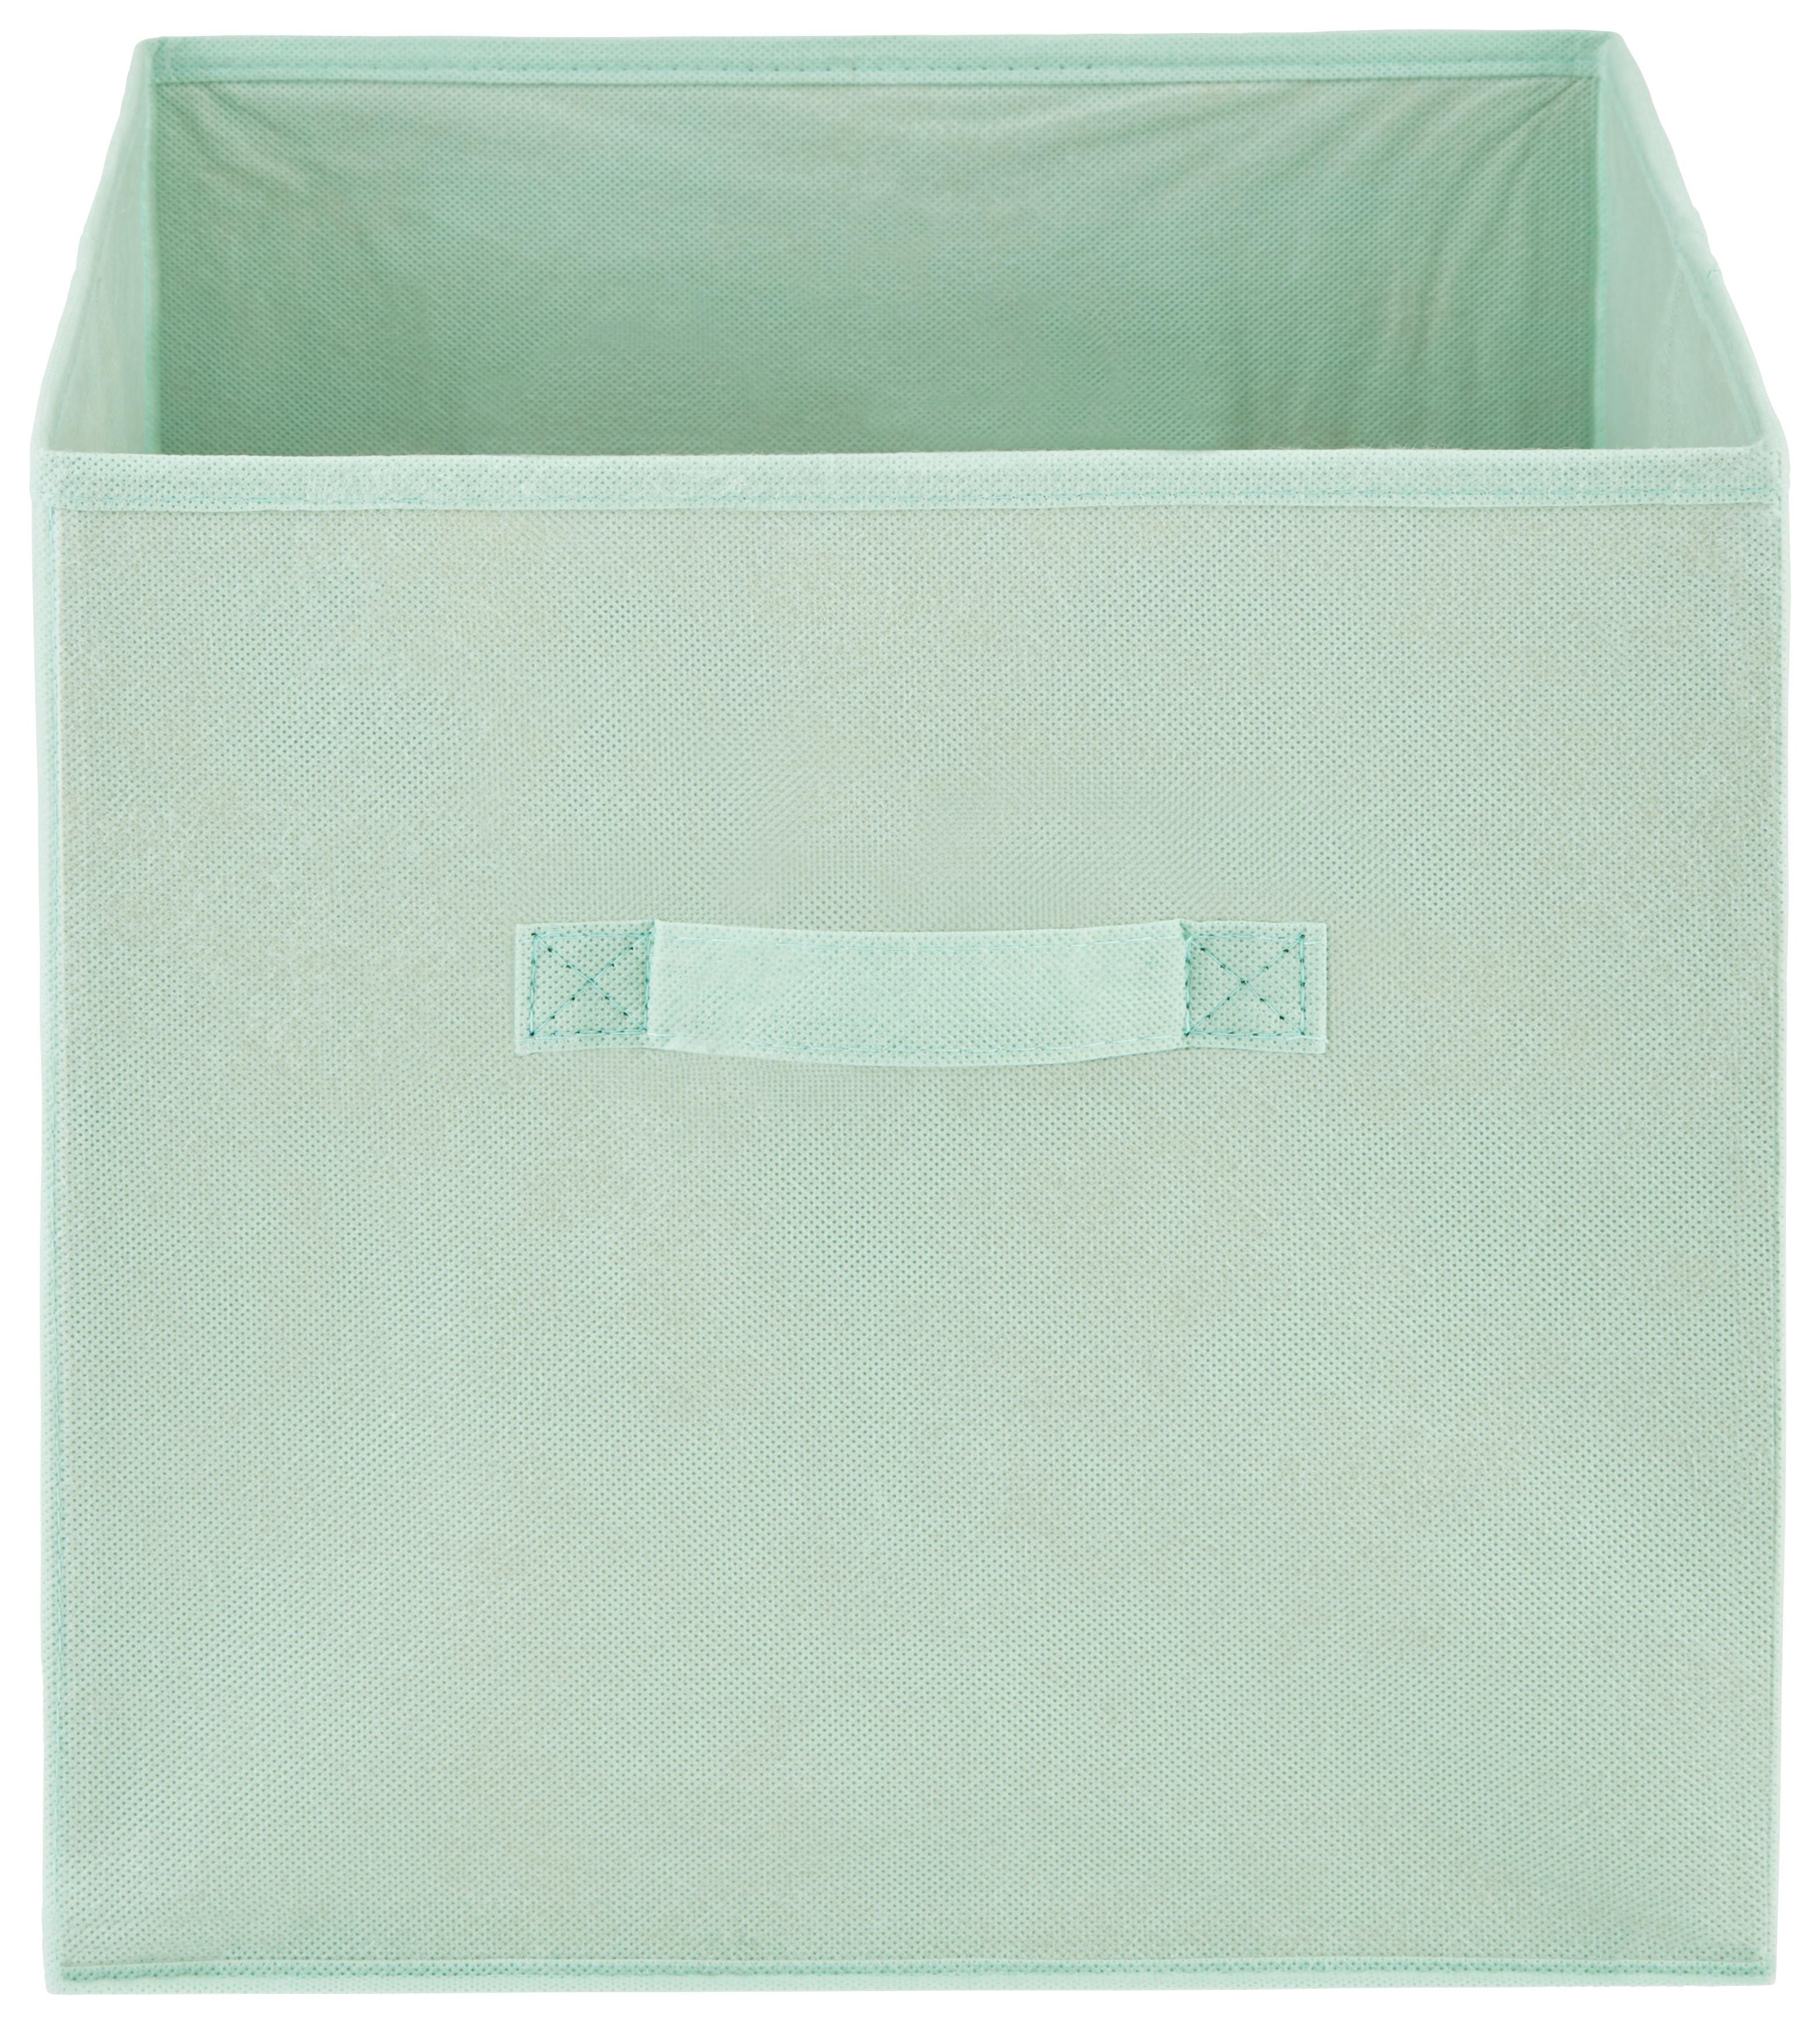 Faltbox Juana 31x31 cm Mintgrün Textil mit Henkel - Mintgrün, KONVENTIONELL, Karton/Textil (31/31/31cm) - Luca Bessoni